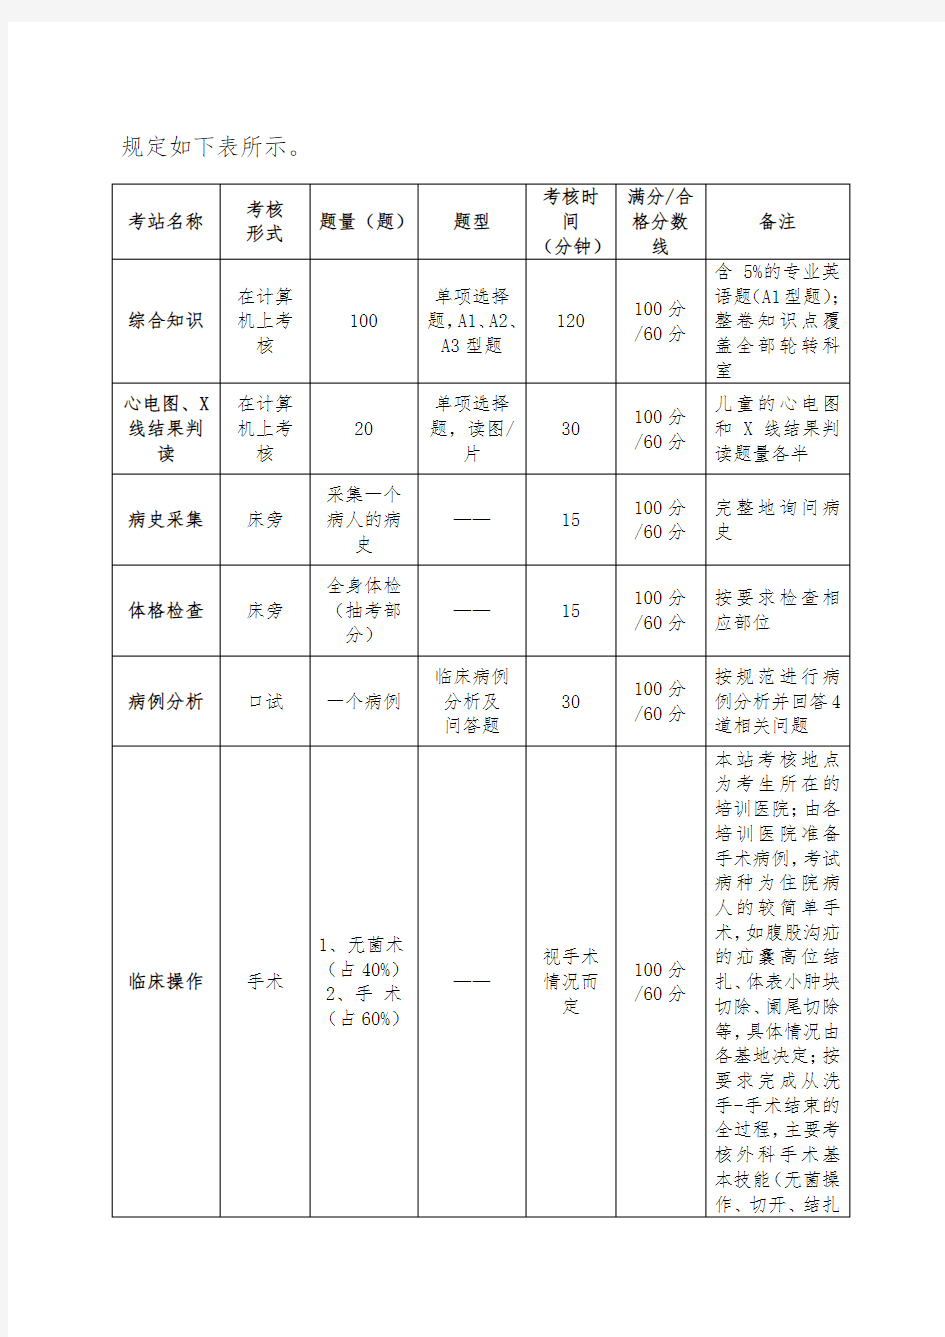 《上海市住院医师规范化培训结业综合考核儿外科考核要求》